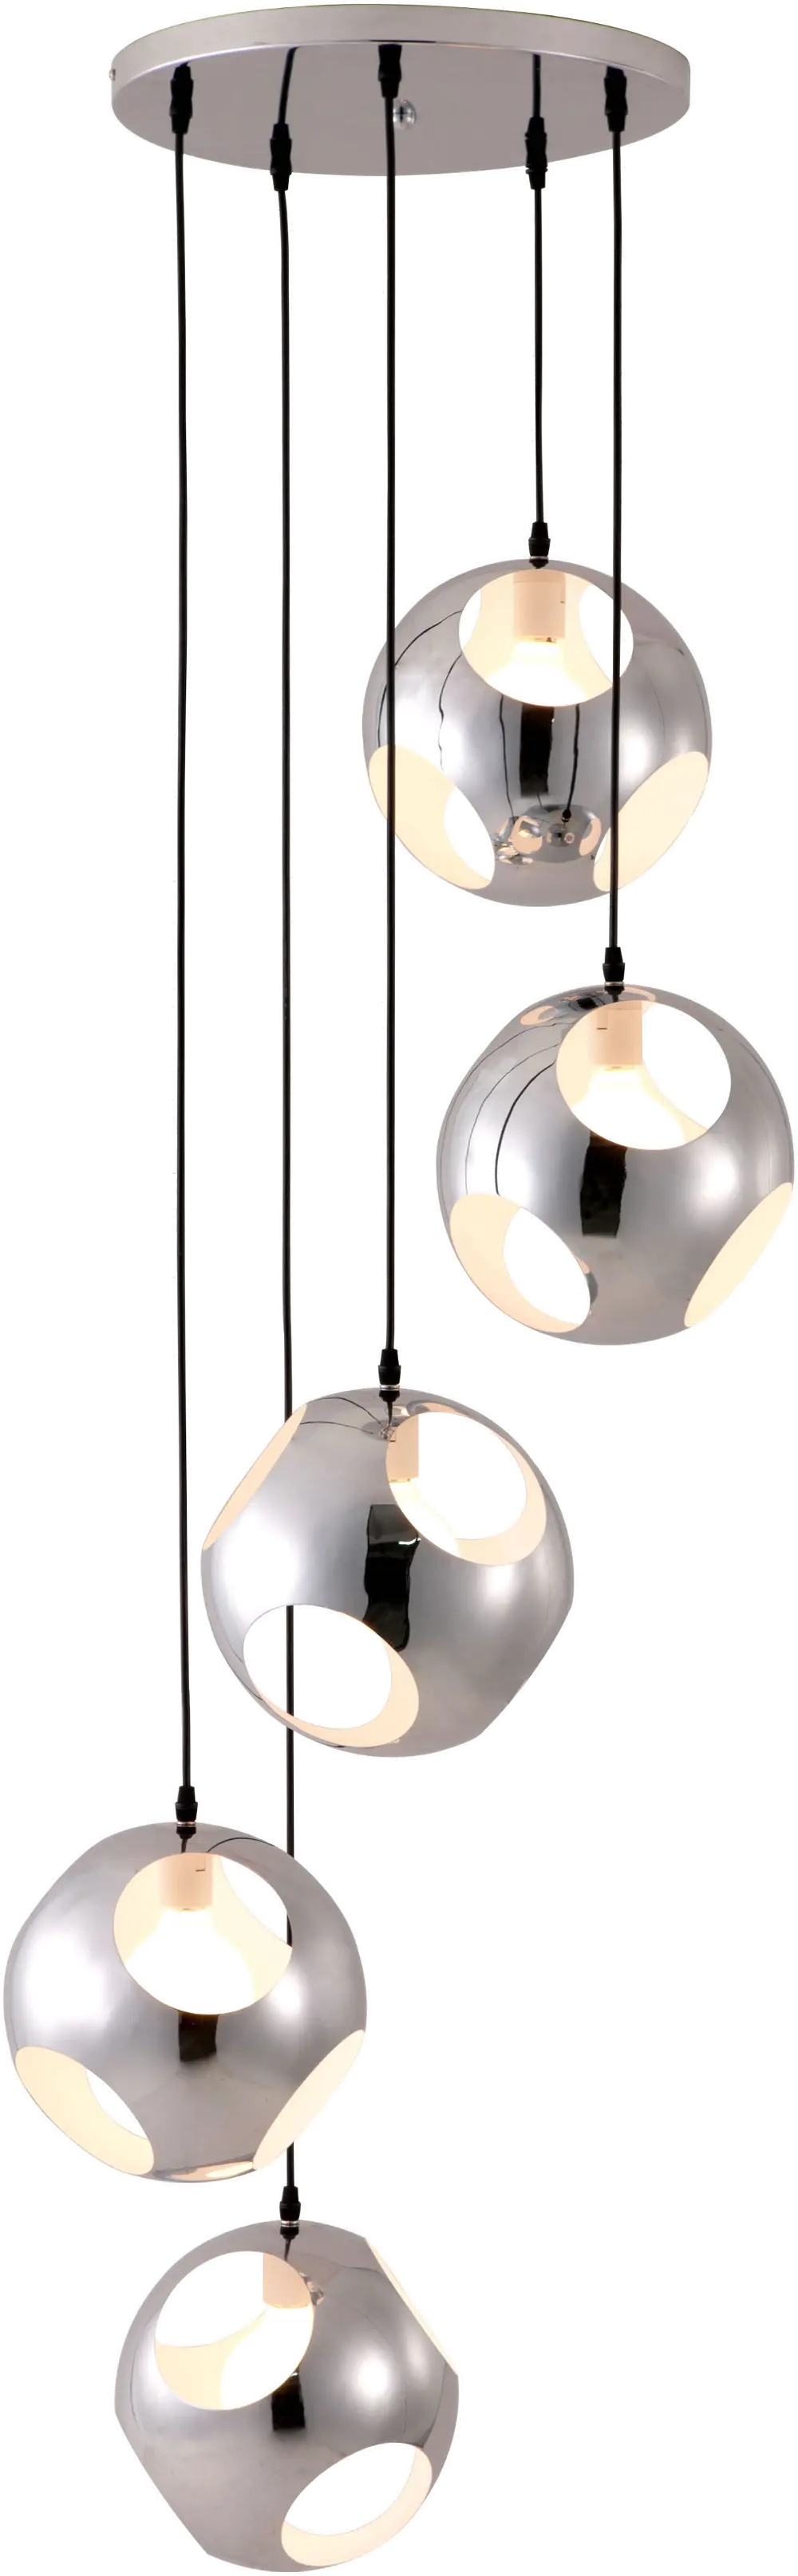 Chrome Spiral Pendant Ceiling Lamp - Meteor Shower-1